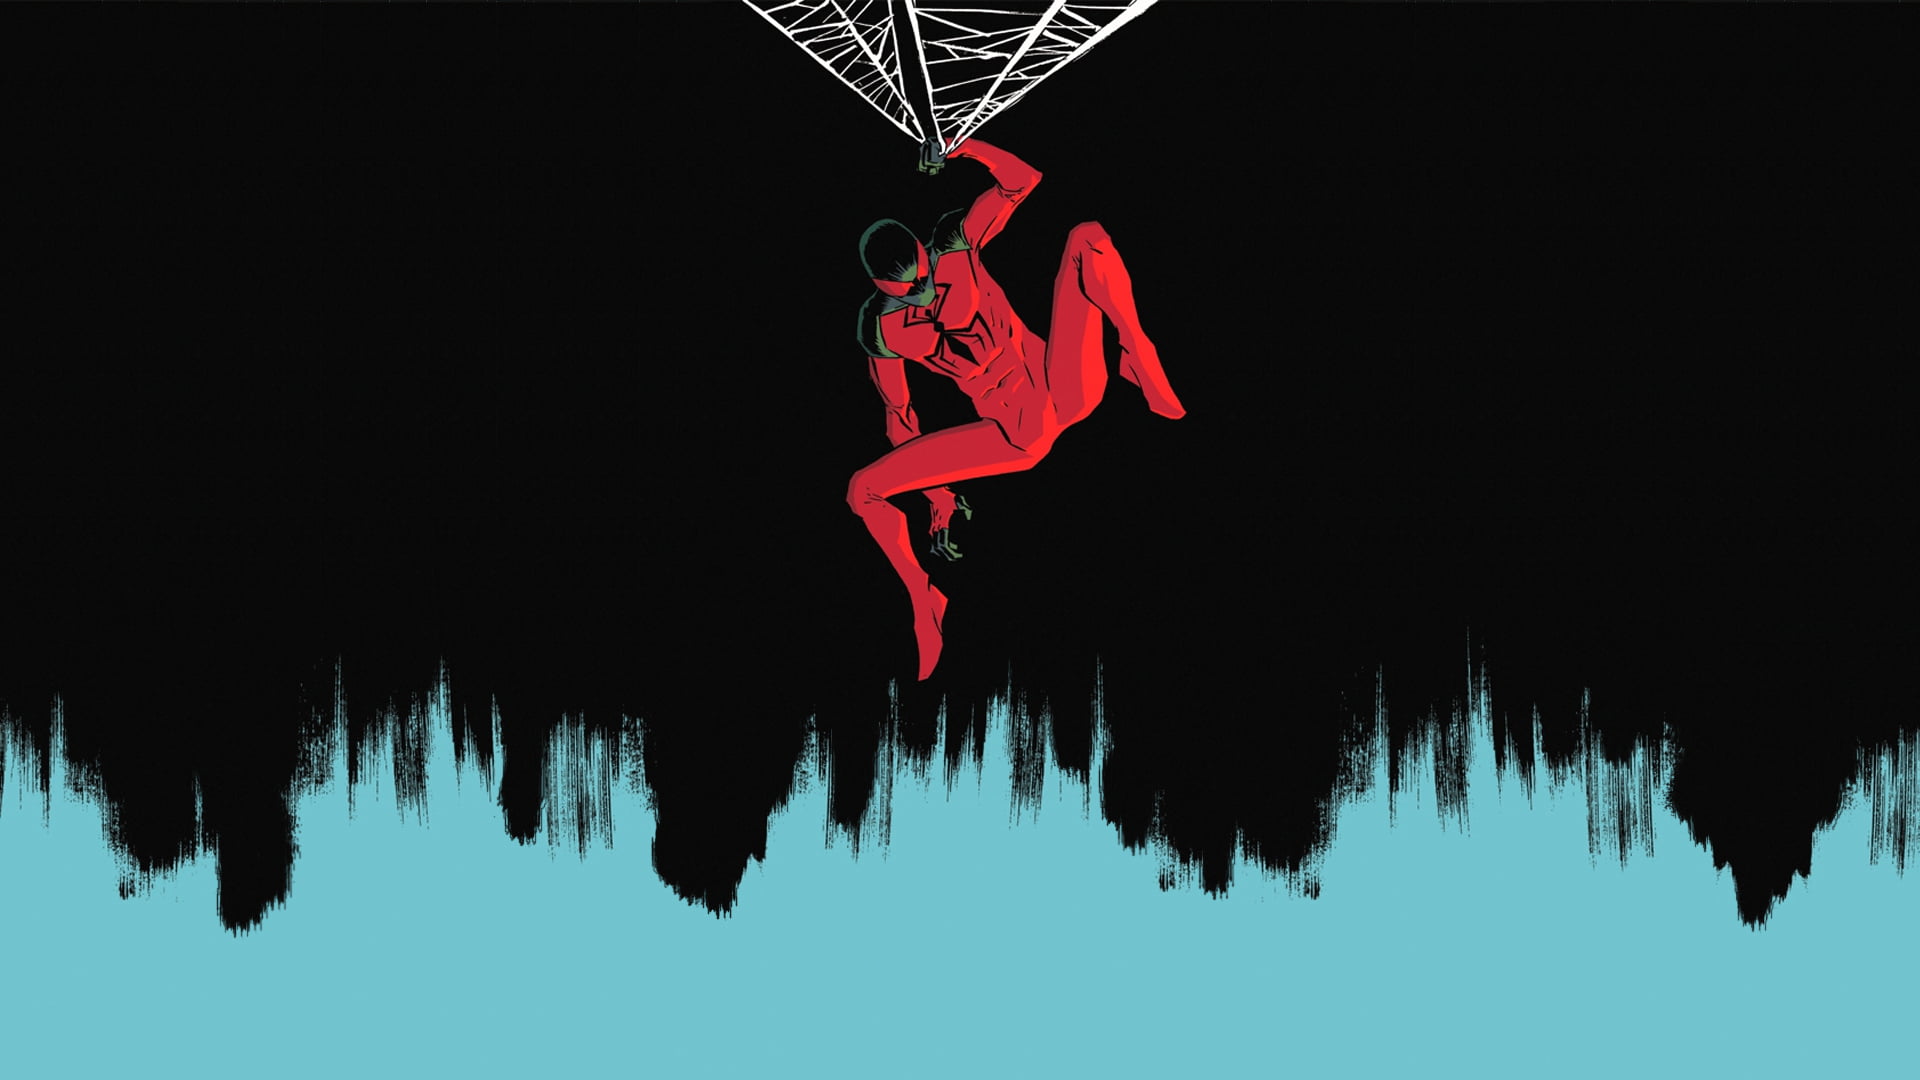 Marvel Spider-Man hanging on web illustration, Scarlet Spider